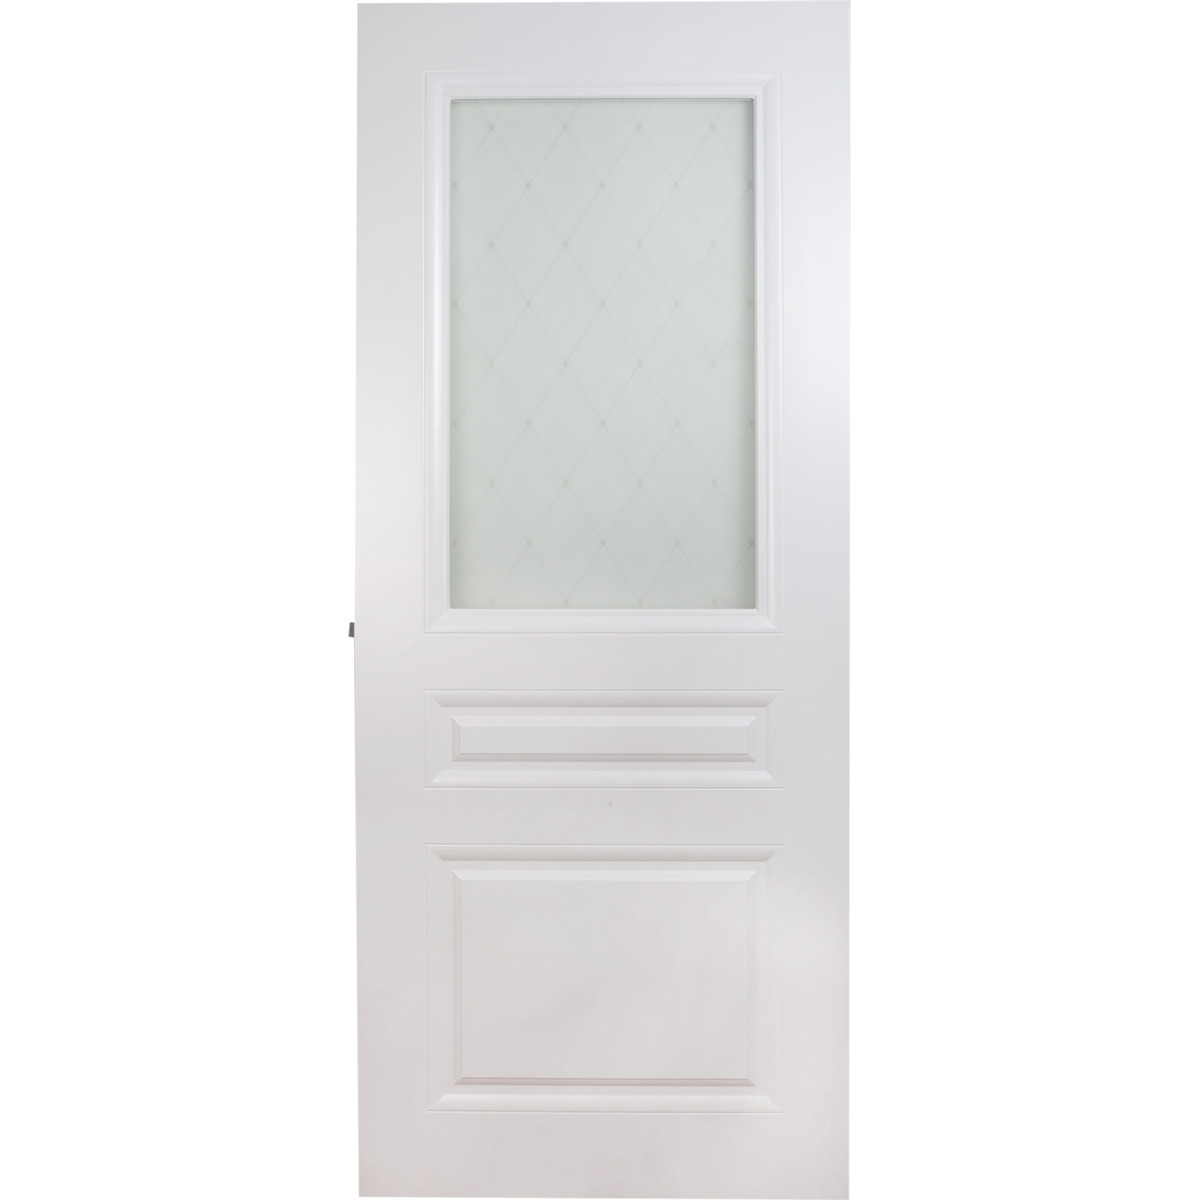 Дверь межкомнатная остеклённая Стелла, 60x200 см, эмаль, цвет белый